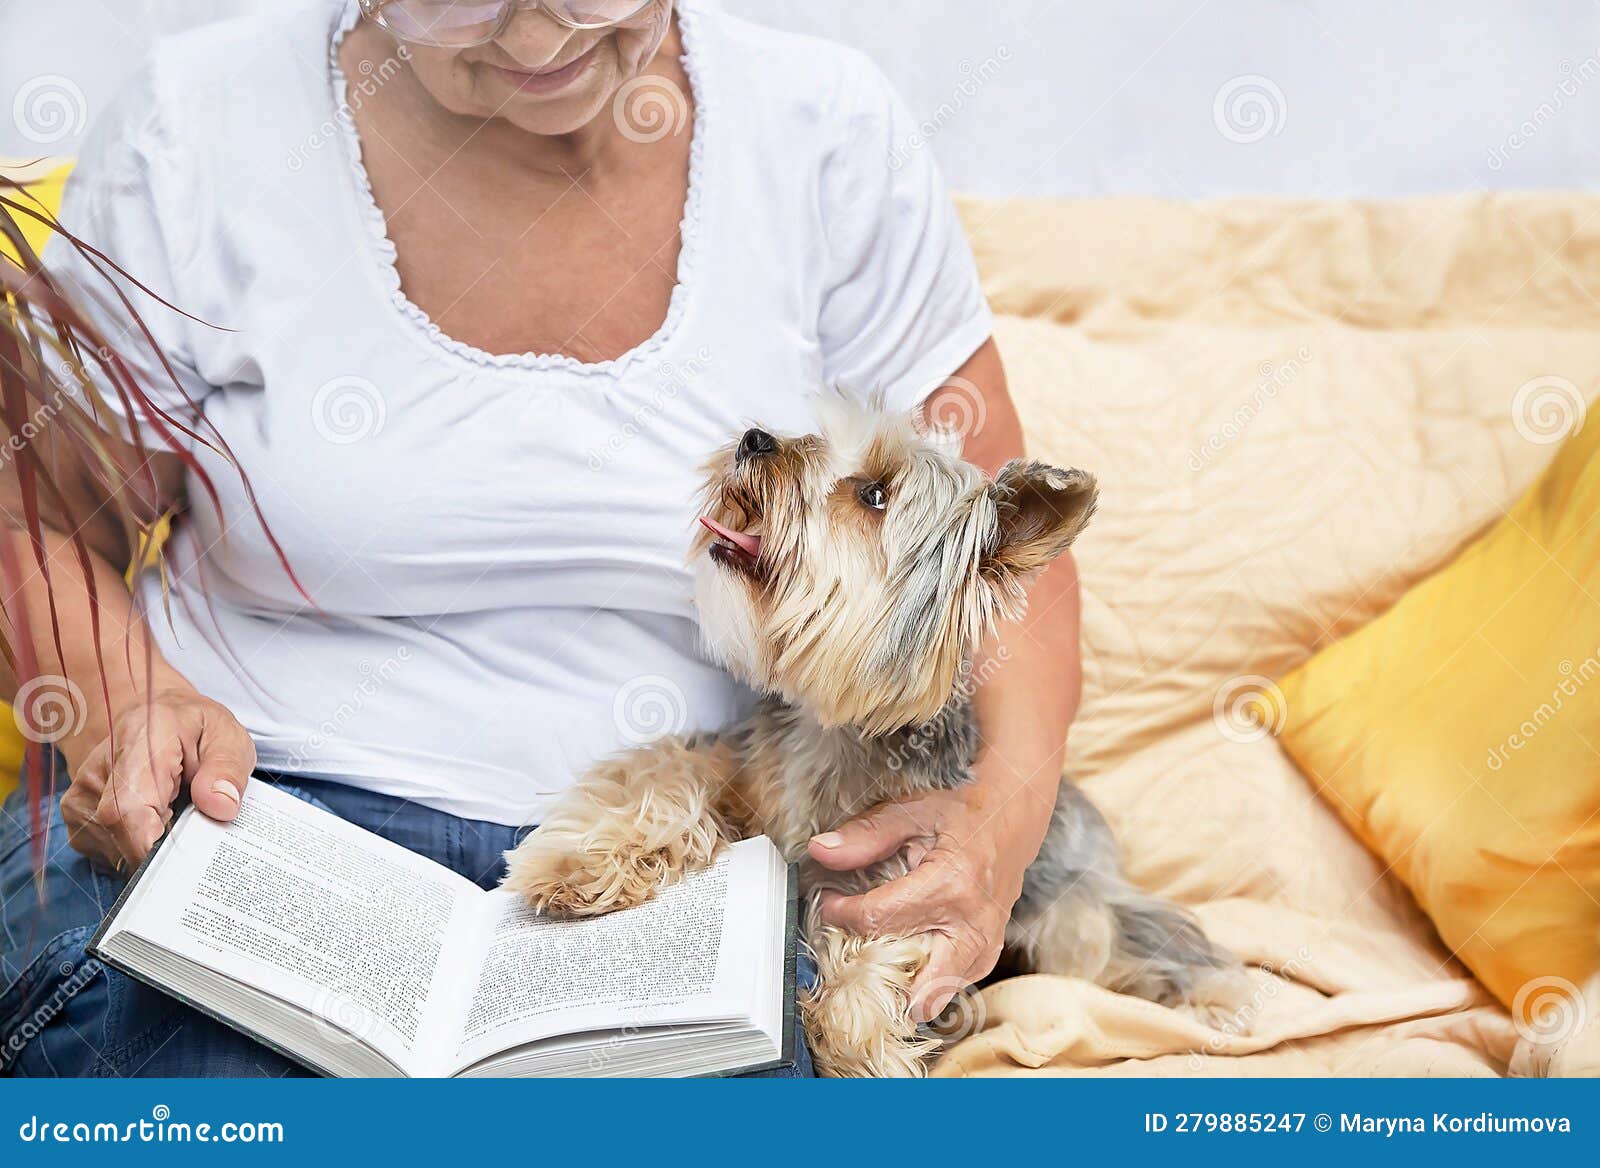 pensioner and animal enjoying rest together. senior woman hugging lovely yorkshire terrier (york) dog.